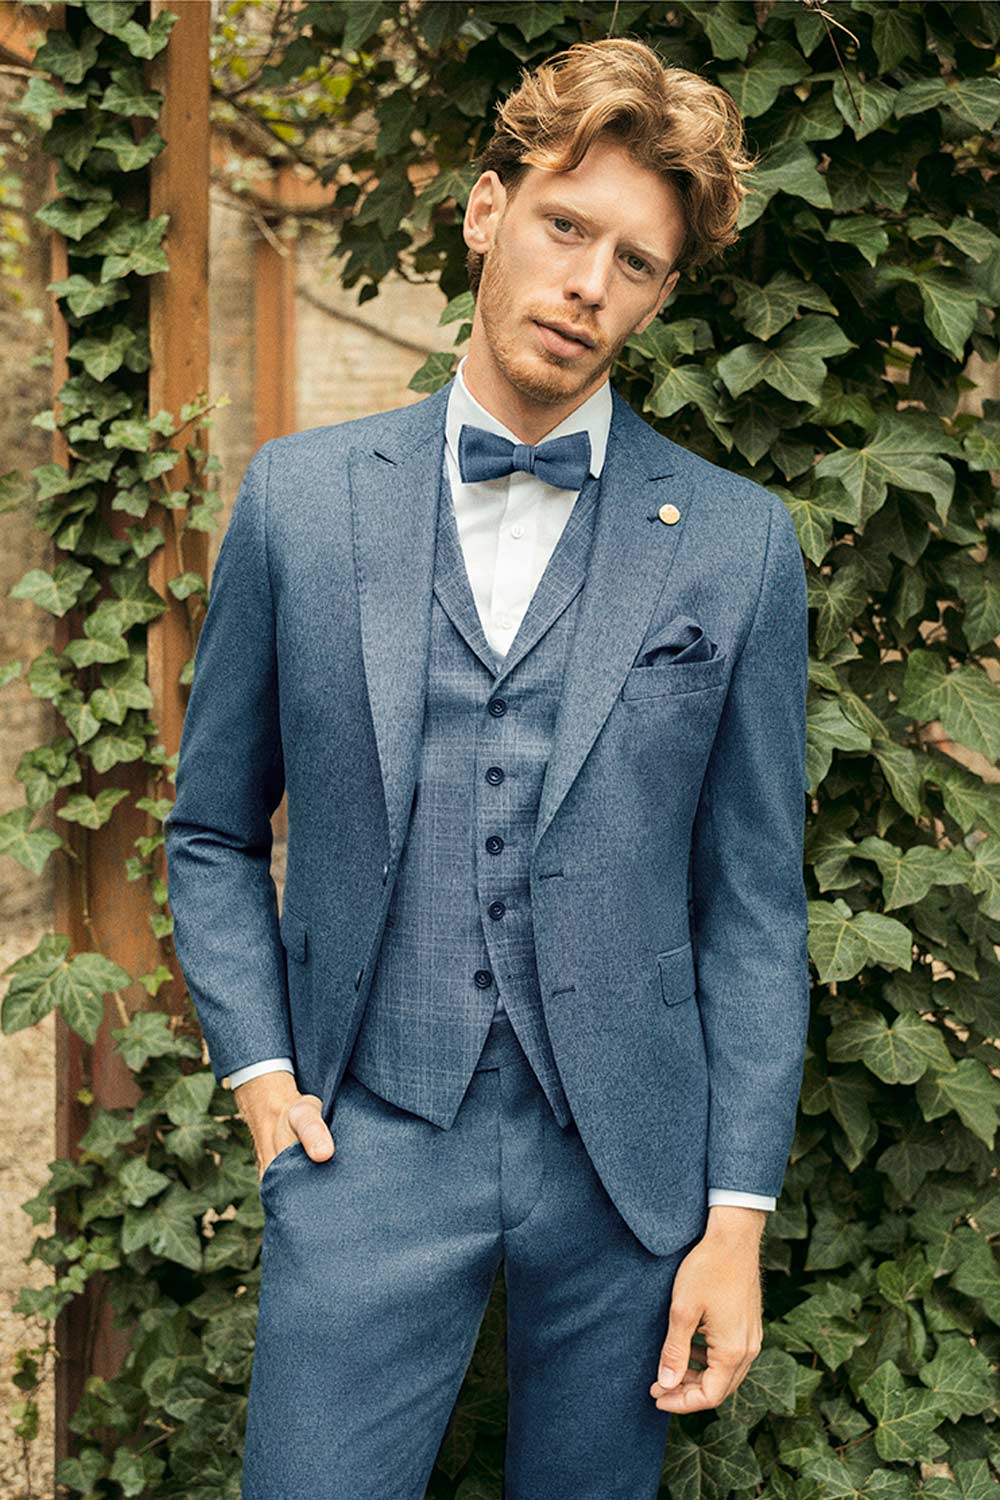 Mottled Blue 3 piece Wedding Suit